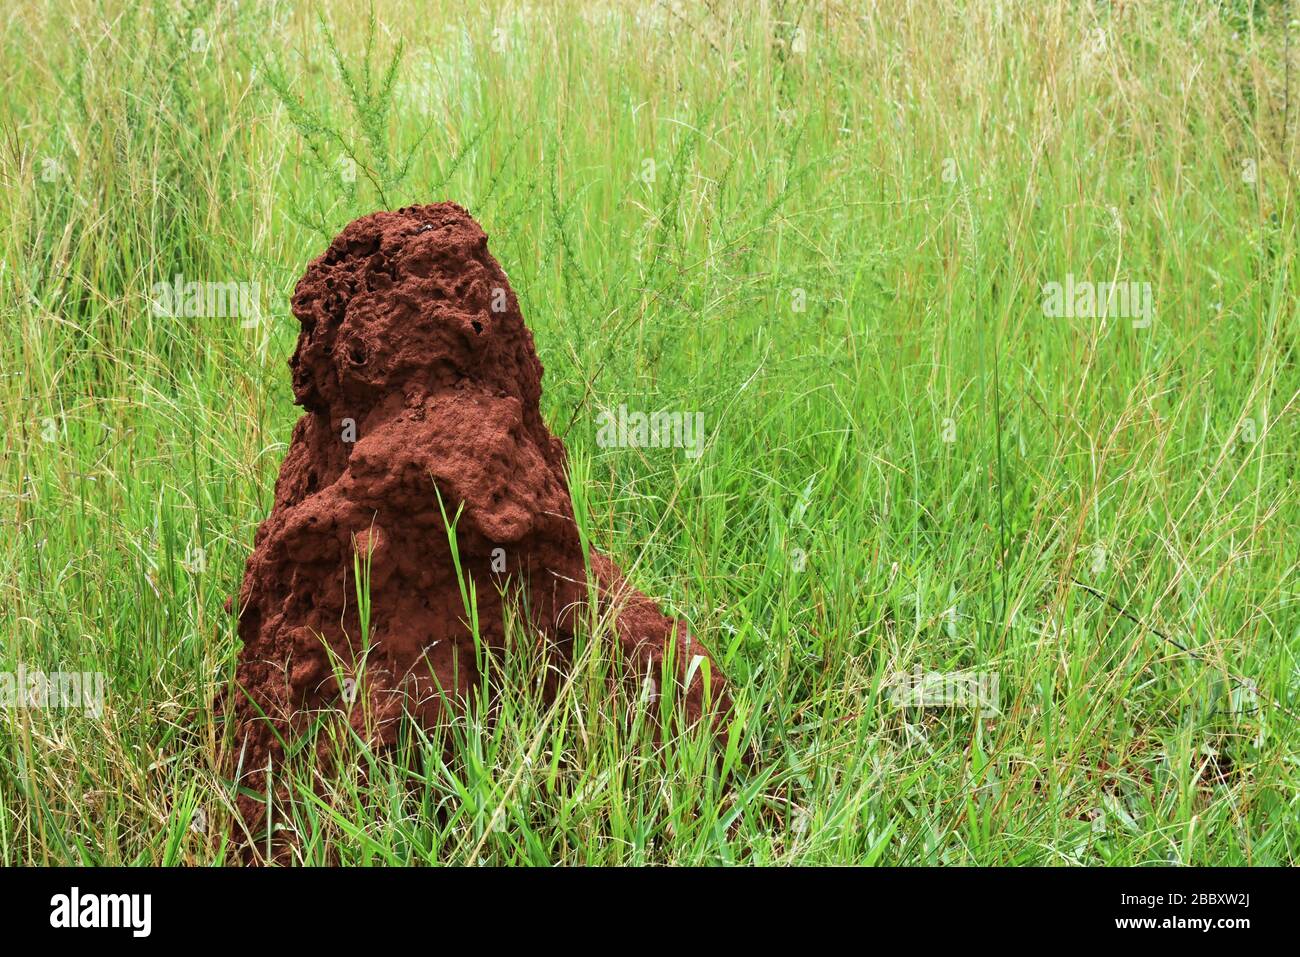 Les termites monent dans les prairies situées dans la forêt naturelle dans l'est du Rwanda Banque D'Images